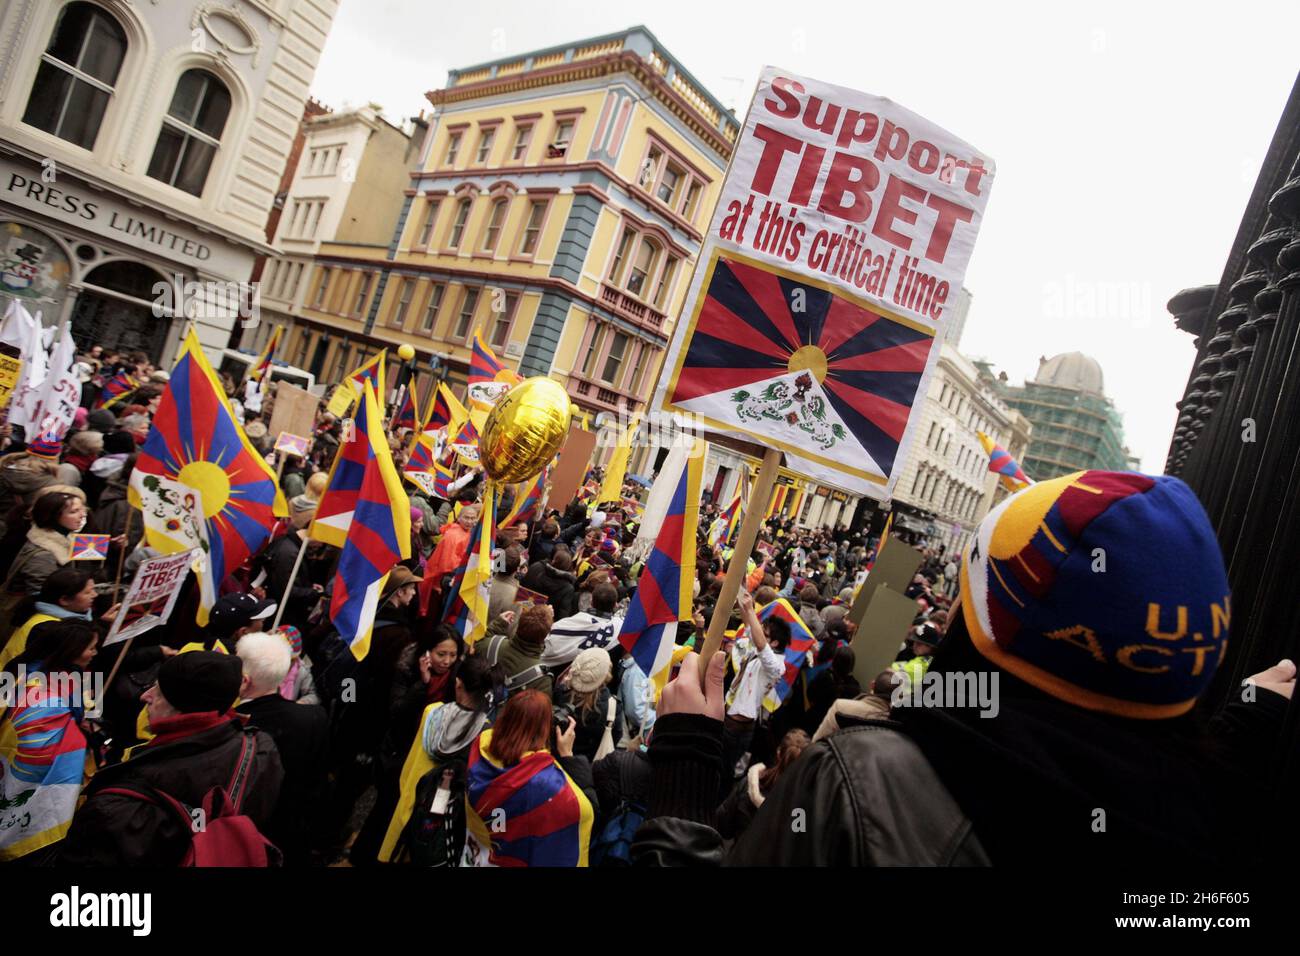 Tibetische Demonstranten werden von der Polizei zurückgehalten, nachdem die olympische Fackel am British Museum im Zentrum von London vorbeigegangen ist. Stockfoto